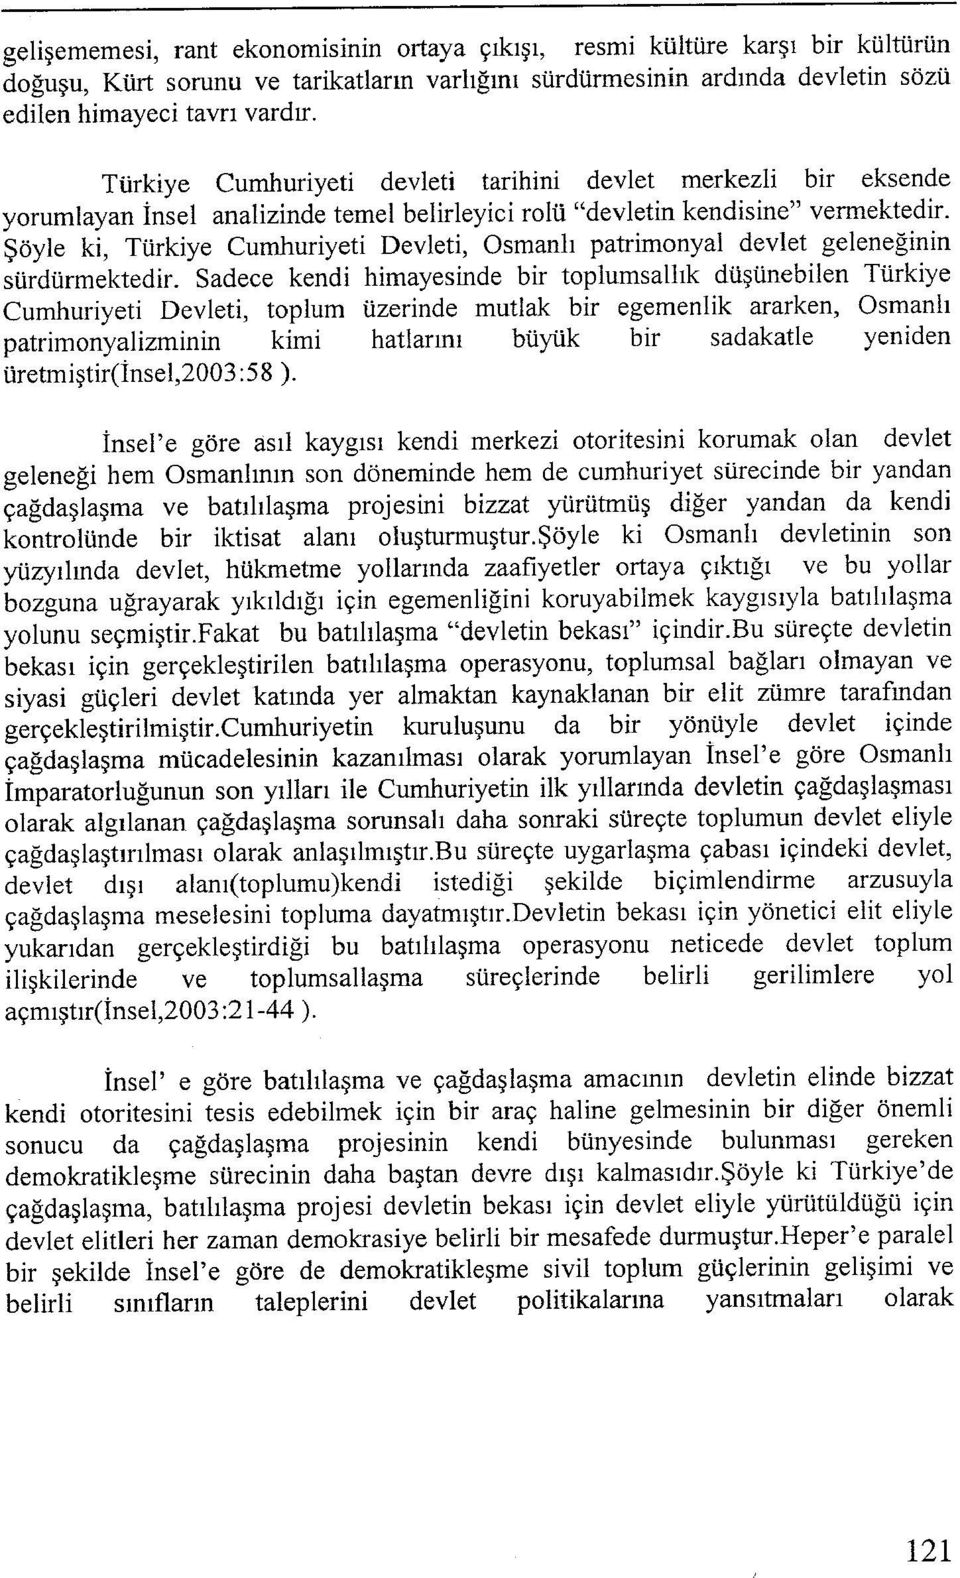 patrimonyal devlet geleneğinin sürdürmektedil Sadece kendi himayesinde bir toplumsallık düşünebilen Türkiye Cumhuriyeti Devleti, toplum üzerinde mutlak bir egemenlik ararken, Osmanlı